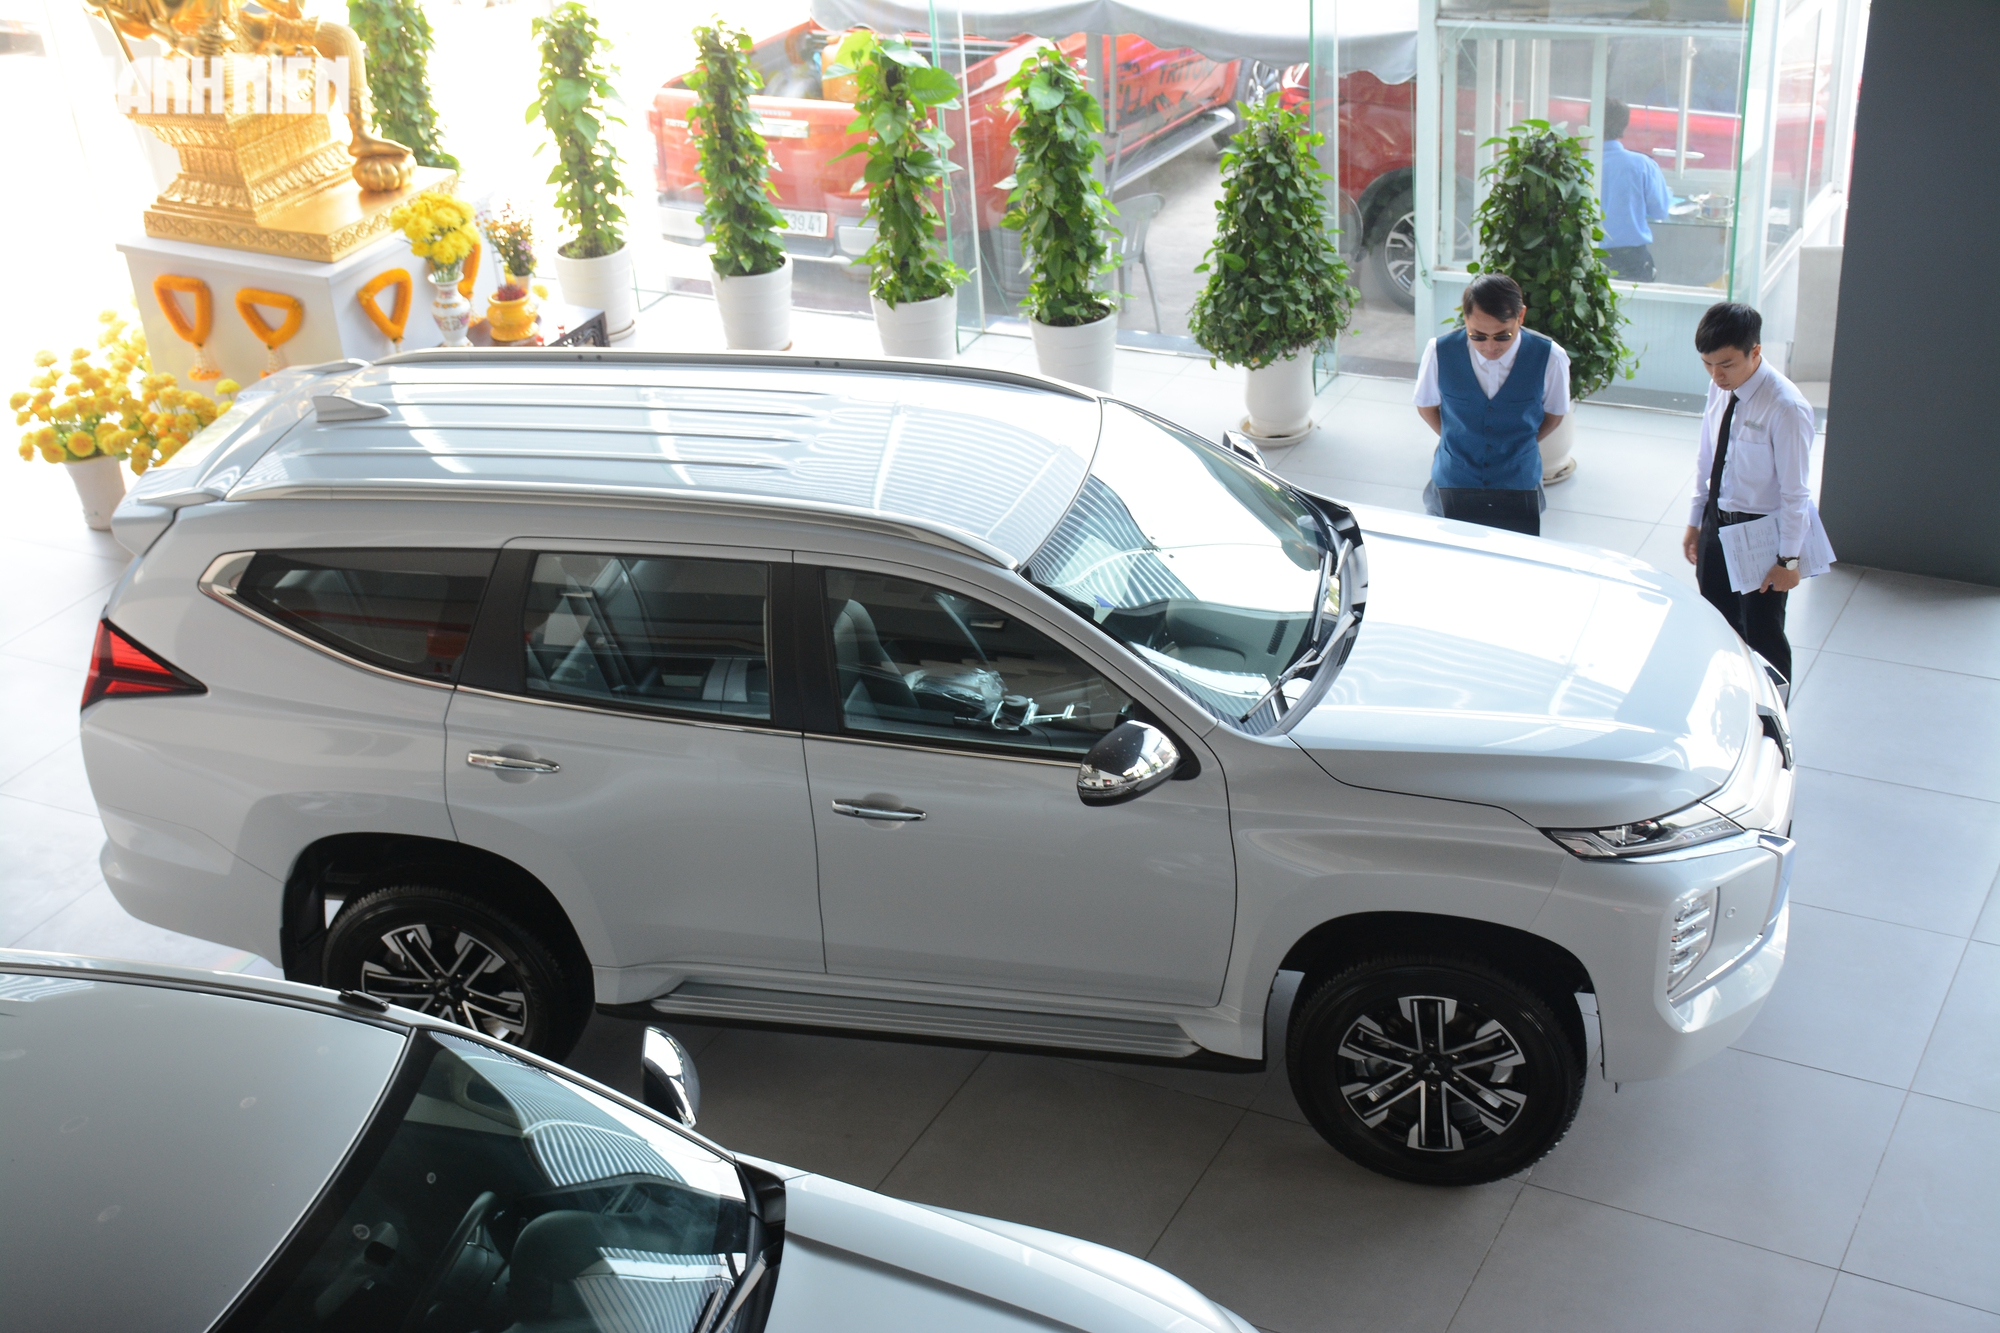 Xả hàng tồn kho, xe SUV 7 chỗ tại Việt Nam giảm giá cả trăm triệu đồng - Ảnh 2.